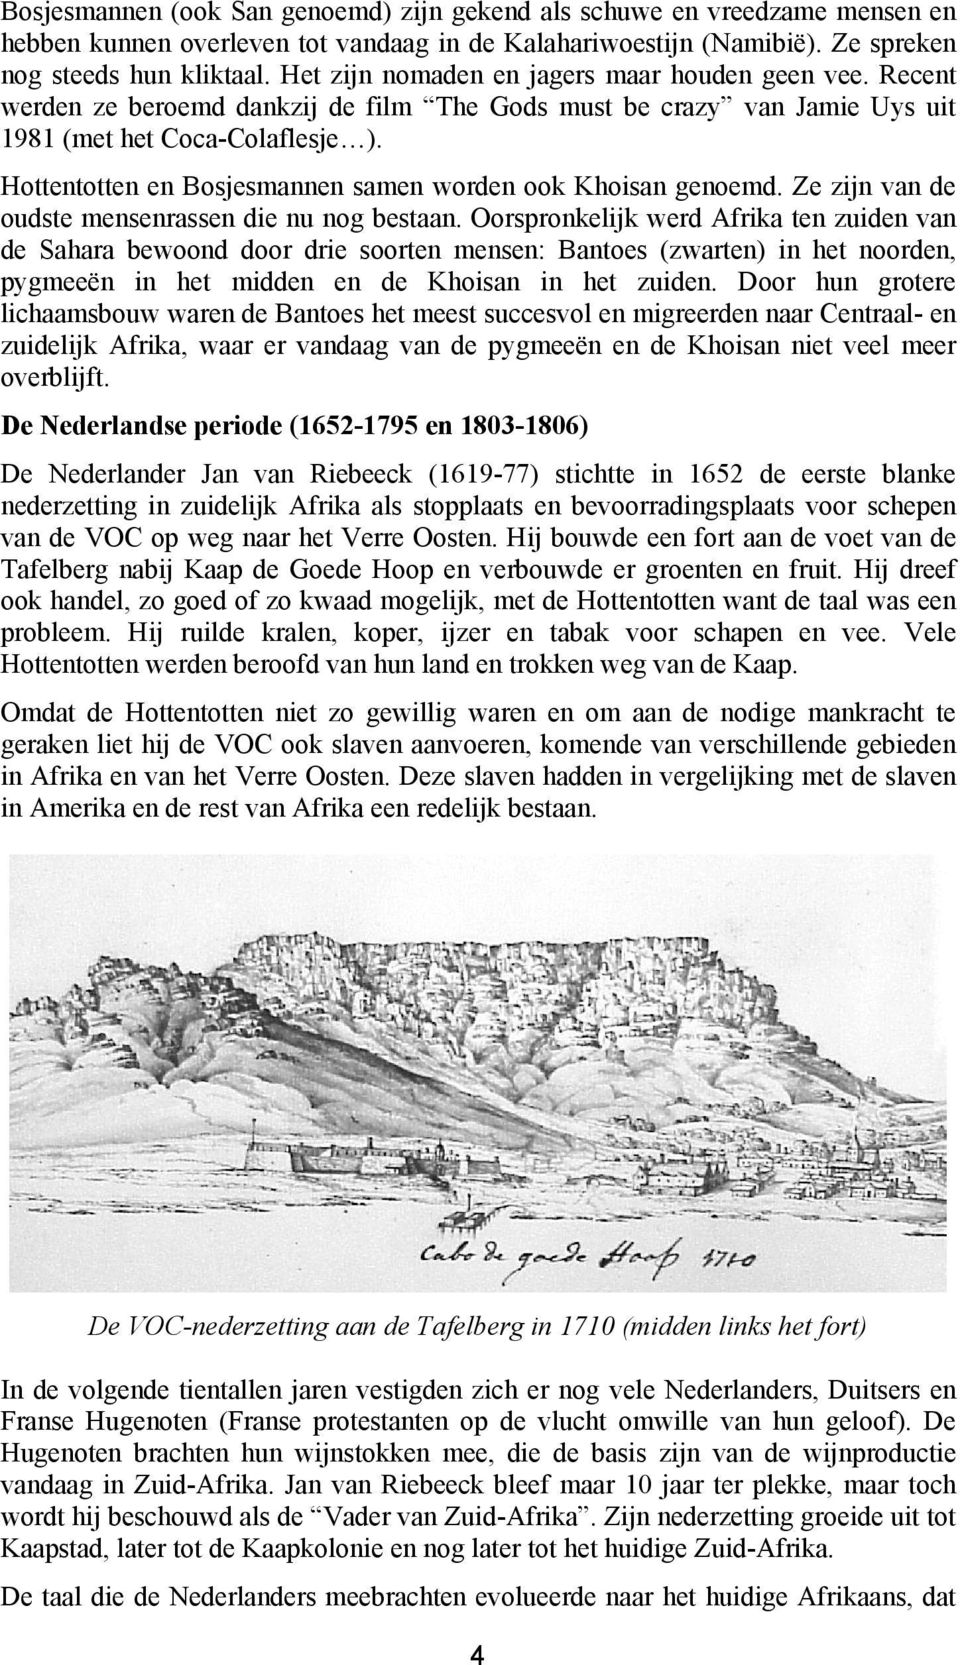 Hottentotten en Bosjesmannen samen worden ook Khoisan genoemd. Ze zijn van de oudste mensenrassen die nu nog bestaan.